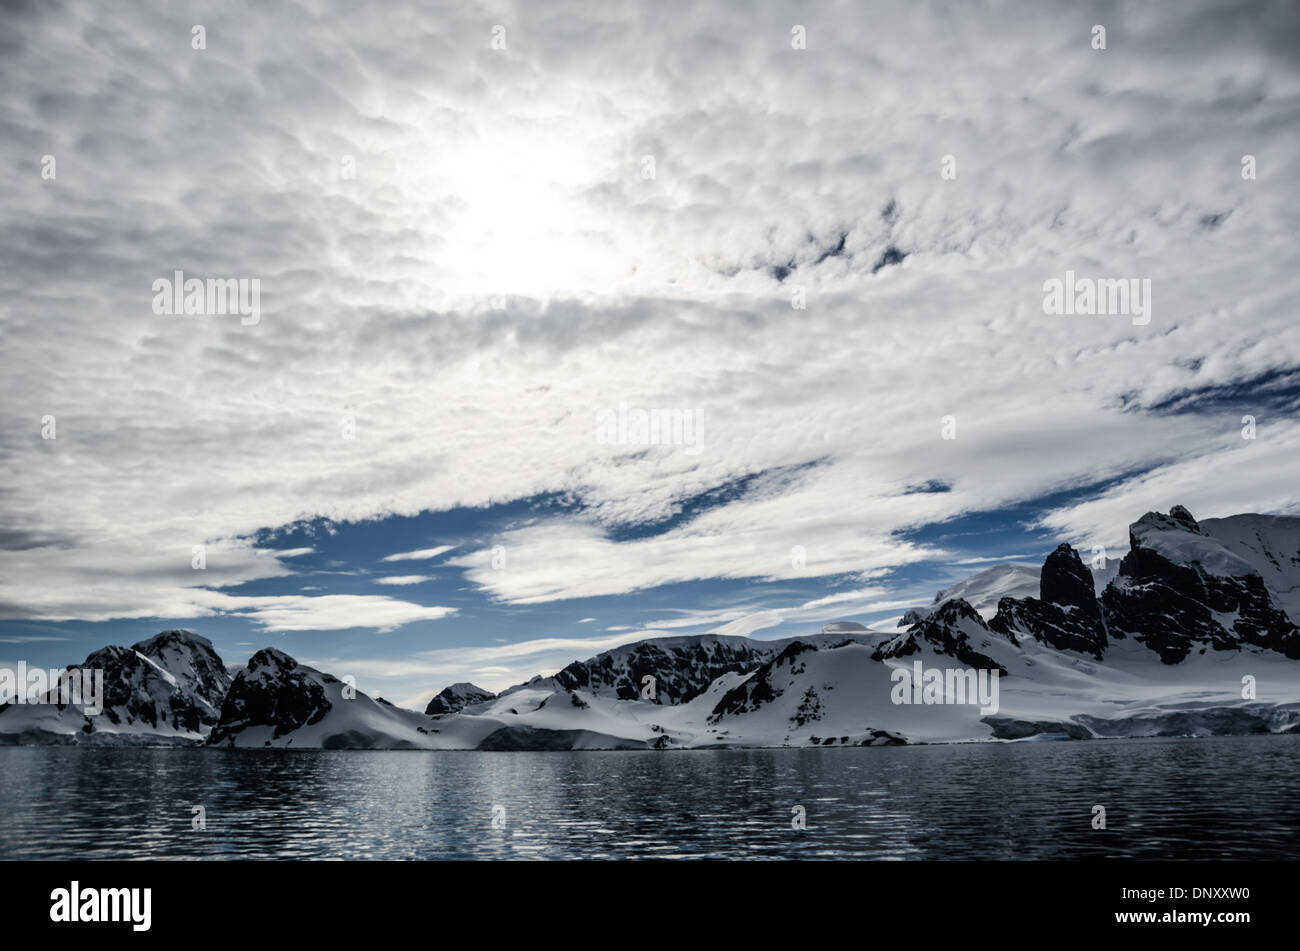 Antartide - un leggero strato di nubi alte oscura parzialmente il sole al di sopra de Cuverville Island sul lato occidentale della penisola antartica. Foto Stock